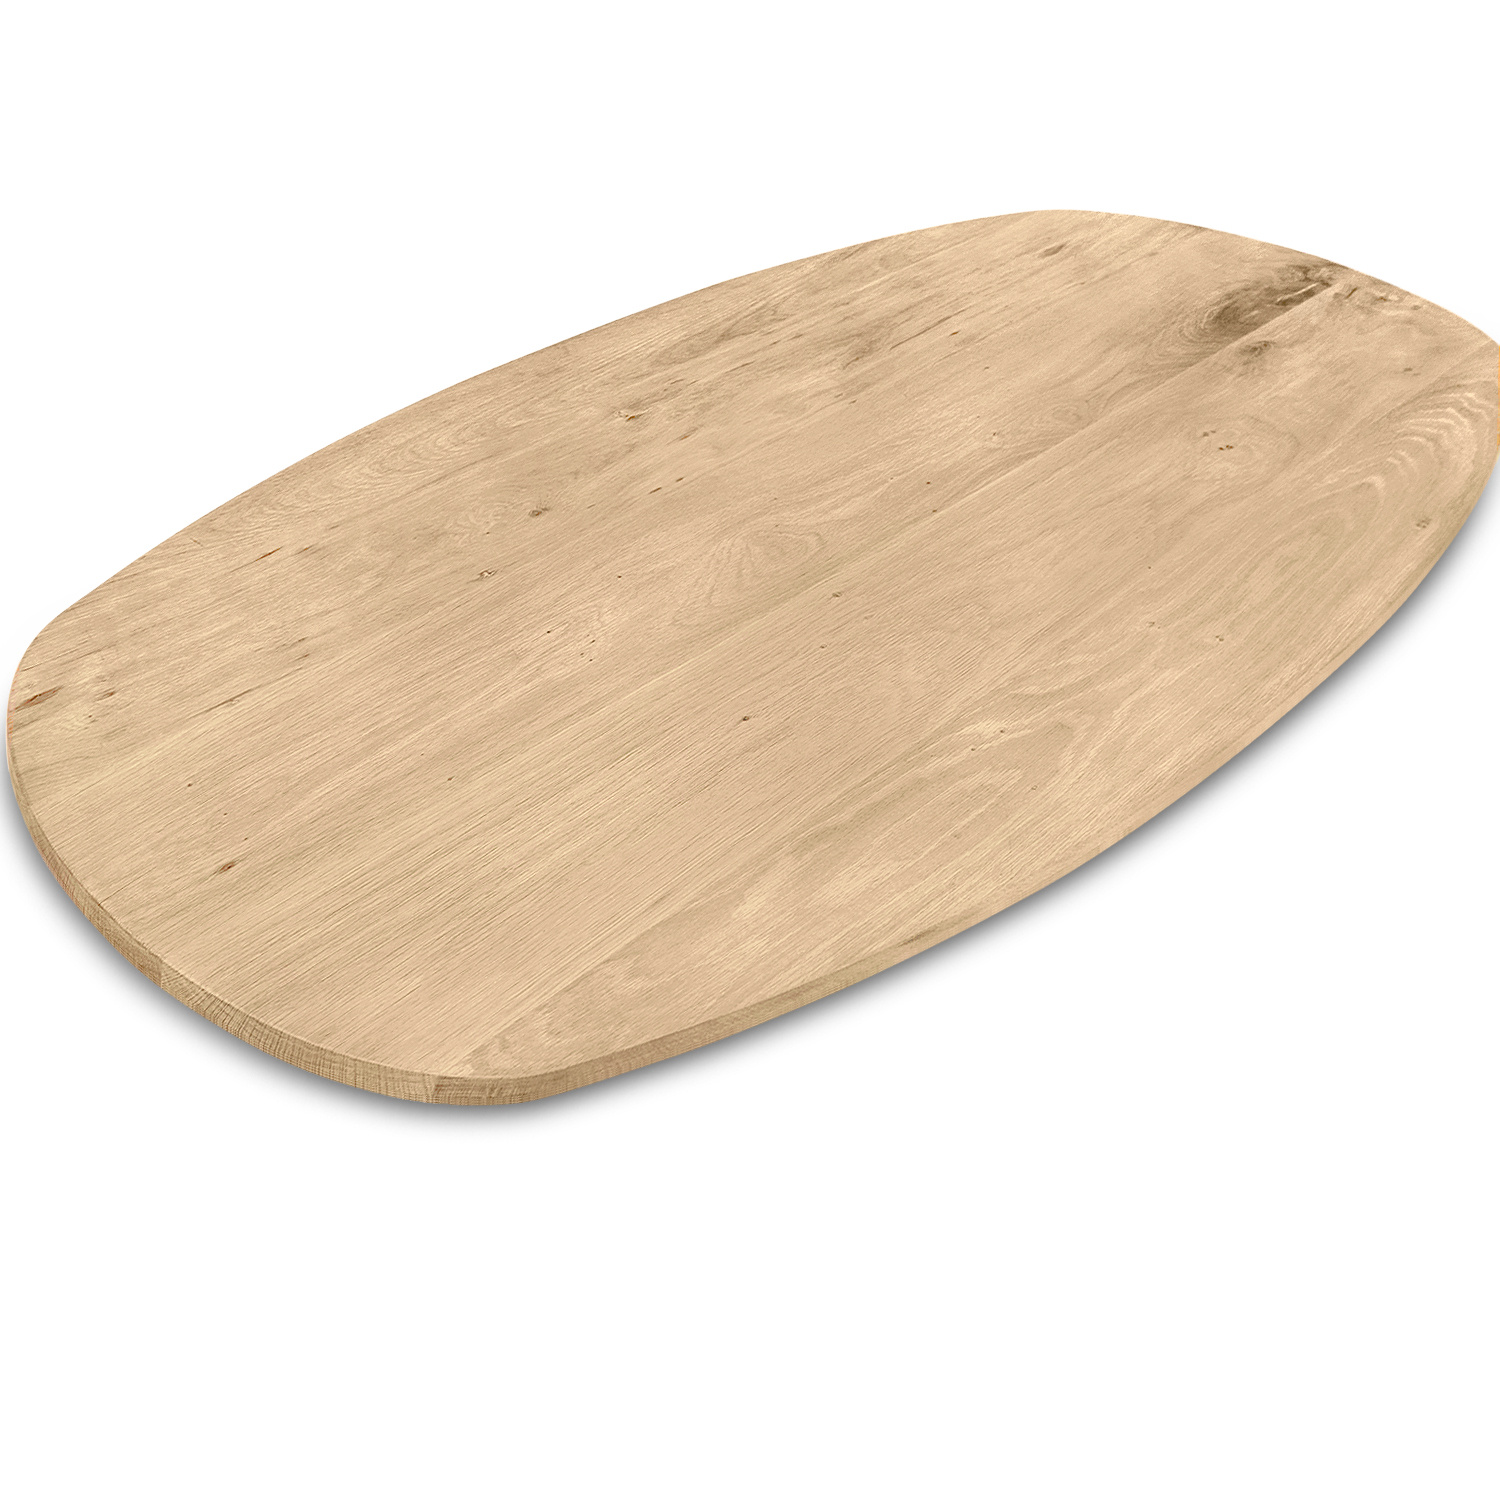  Deens ovaal eiken tafelblad - 3 cm dik (1-laag) - Diverse afmetingen - extra rustiek Europees eikenhout - met extra brede lamellen (circa 14-20 cm) - verlijmd kd 8-12%